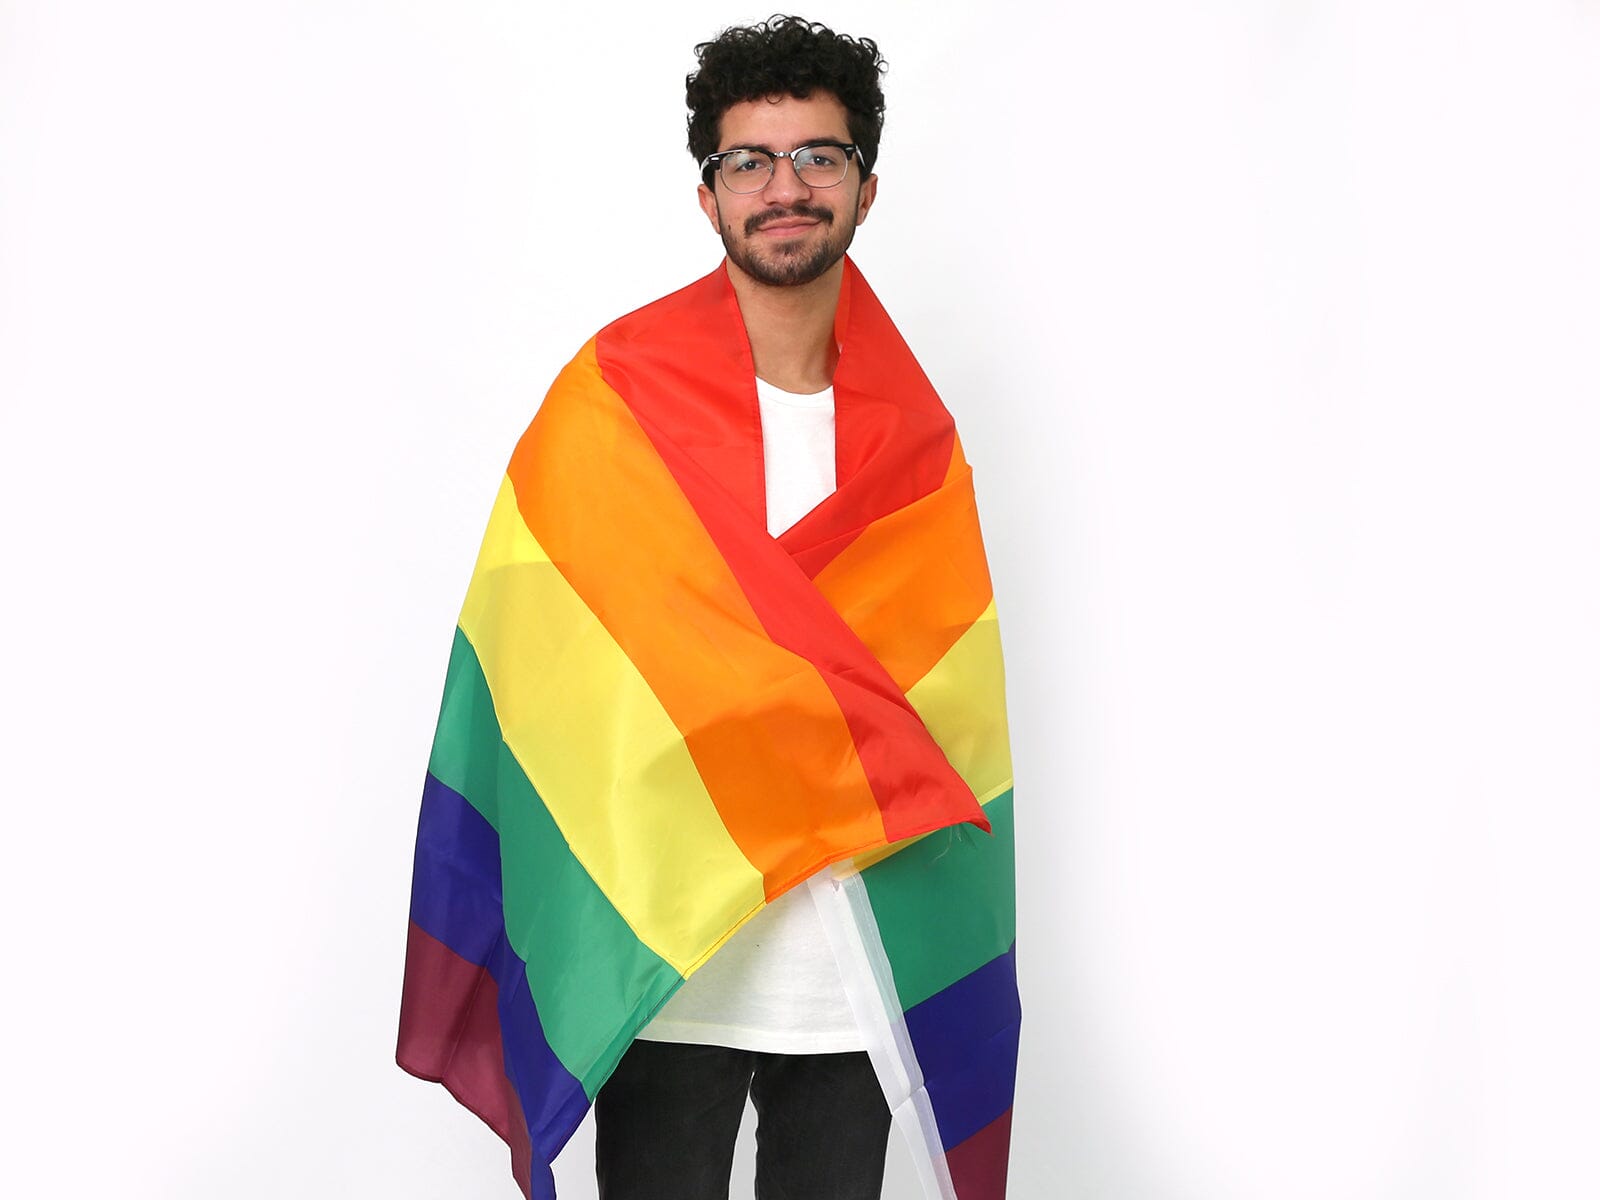 Rainbow 3 Feet by 5 Feet Nylon PRIDE Flag, Pride Parade Flags